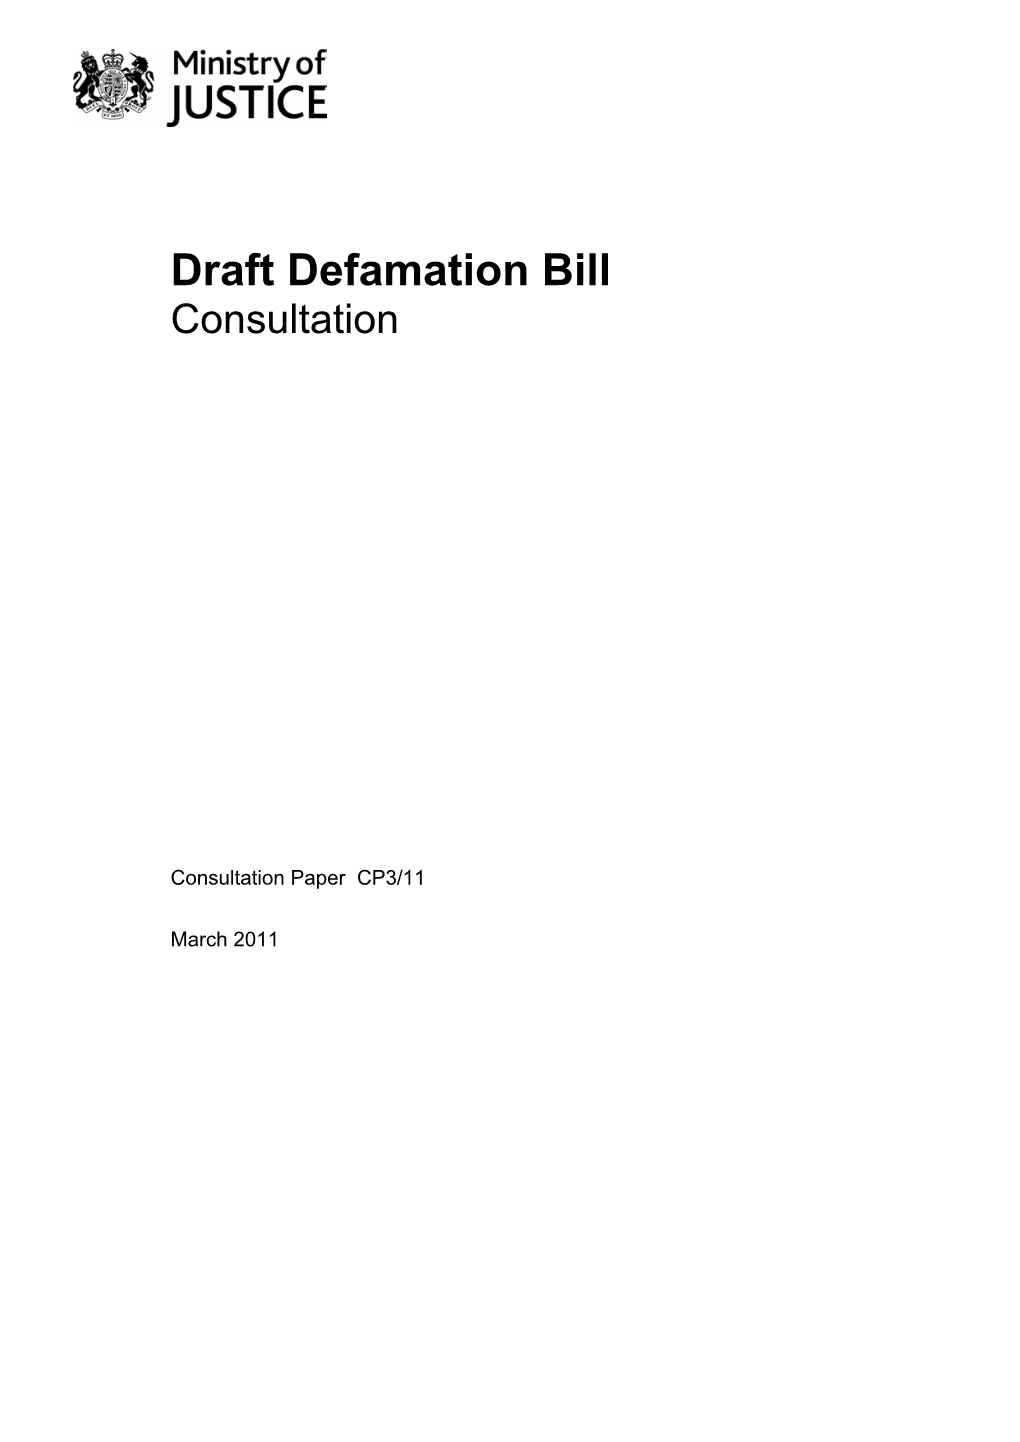 Draft Defamation Bill Consultation